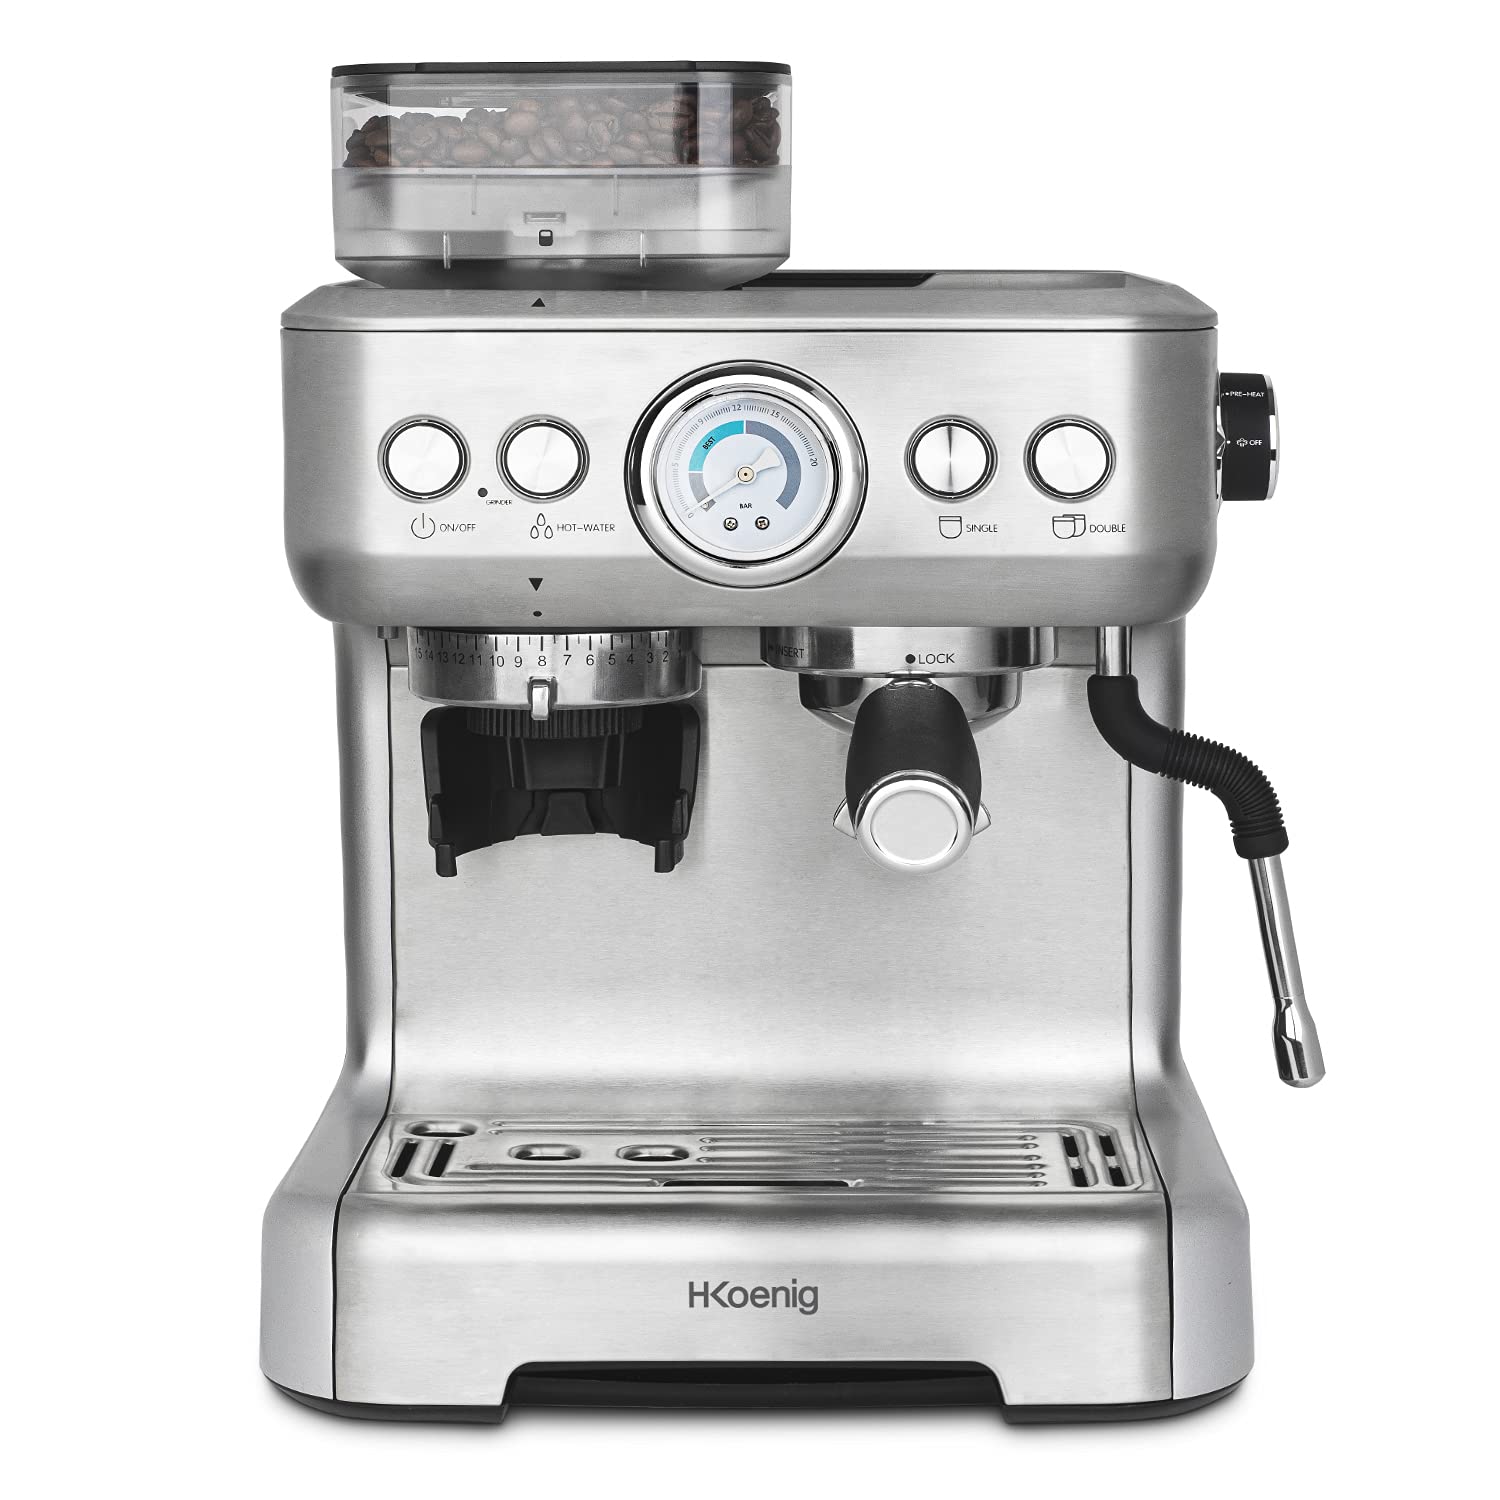 H.Koenig Espressomaschine mit Mahlwerk EXPRO980, 2,7 l, 250 g, Körnungsbehälter, 15 Mahlgrößen, italienische Pumpe, individuell anpassbare Dosierung für 1 oder 2 Tassen, Druck 20 bar, Vollautomat